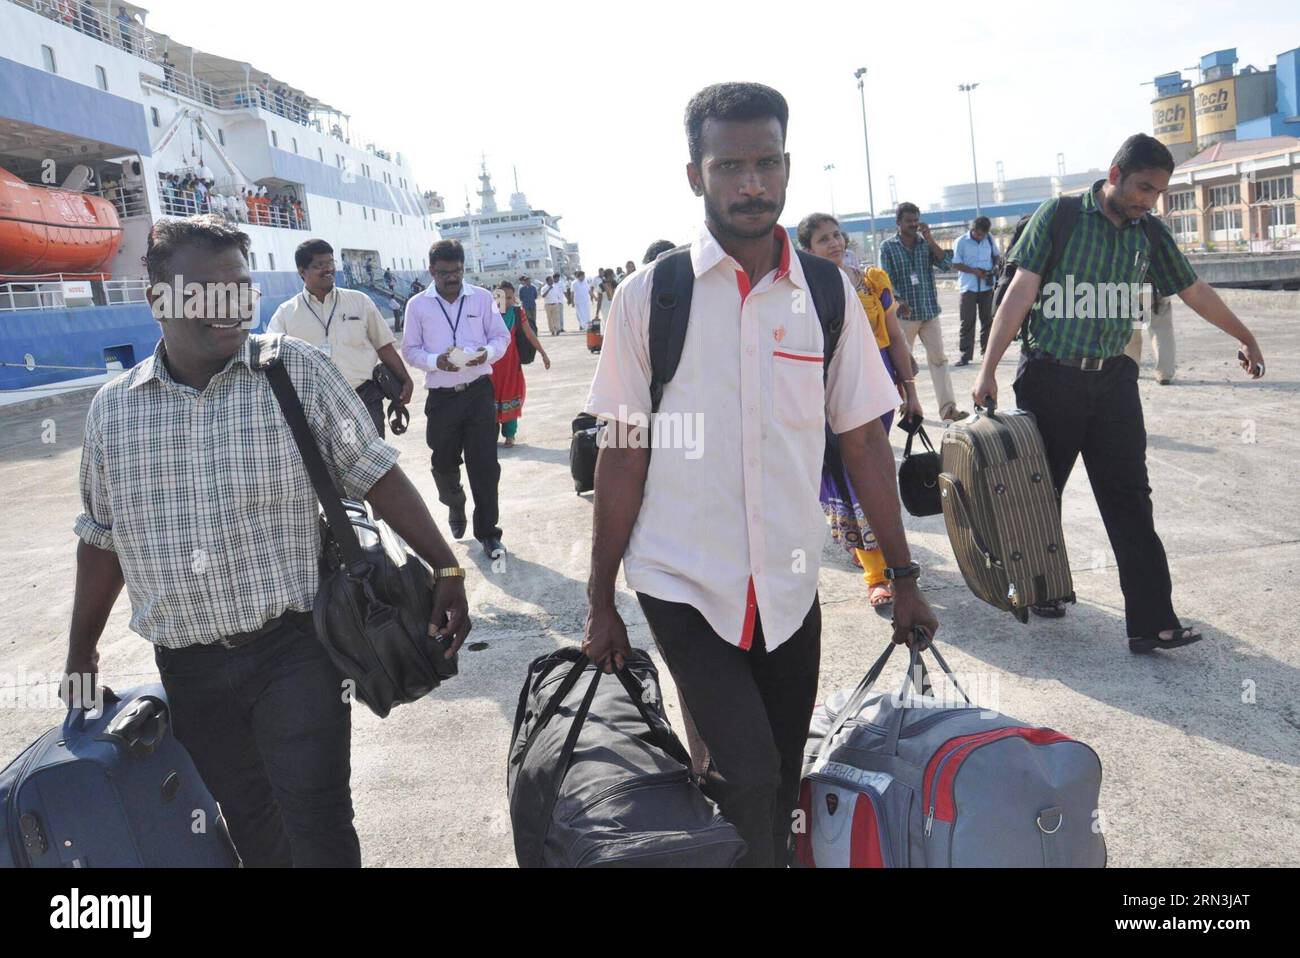 KOCHI, 18 aprile 2015 -- gli sfollati indiani dallo Yemen devastato dalla guerra sbarcano da una nave nel porto di Kochi, India, 18 aprile 2015. I cittadini indiani evacuati dallo Yemen sono arrivati qui a Kochi, Kerala, con due navi passeggeri. )(bxq) INDIA-KOCHI-YEMEN-EVACUEES Stringer PUBLICATIONxNOTxINxCHN Kochi 18 aprile 2015 gli sfollati indiani dalla è stato lacerato lo Yemen sbarcano da una nave nel porto di Kochi India 18 aprile 2015 cittadini indiani evacuati dallo Yemen hanno raggiunto qui a Kochi Kerala in due navi passeggeri India Kochi Yemen evacuano Stringer PUBLICATIONXNOTxINCHN Foto Stock